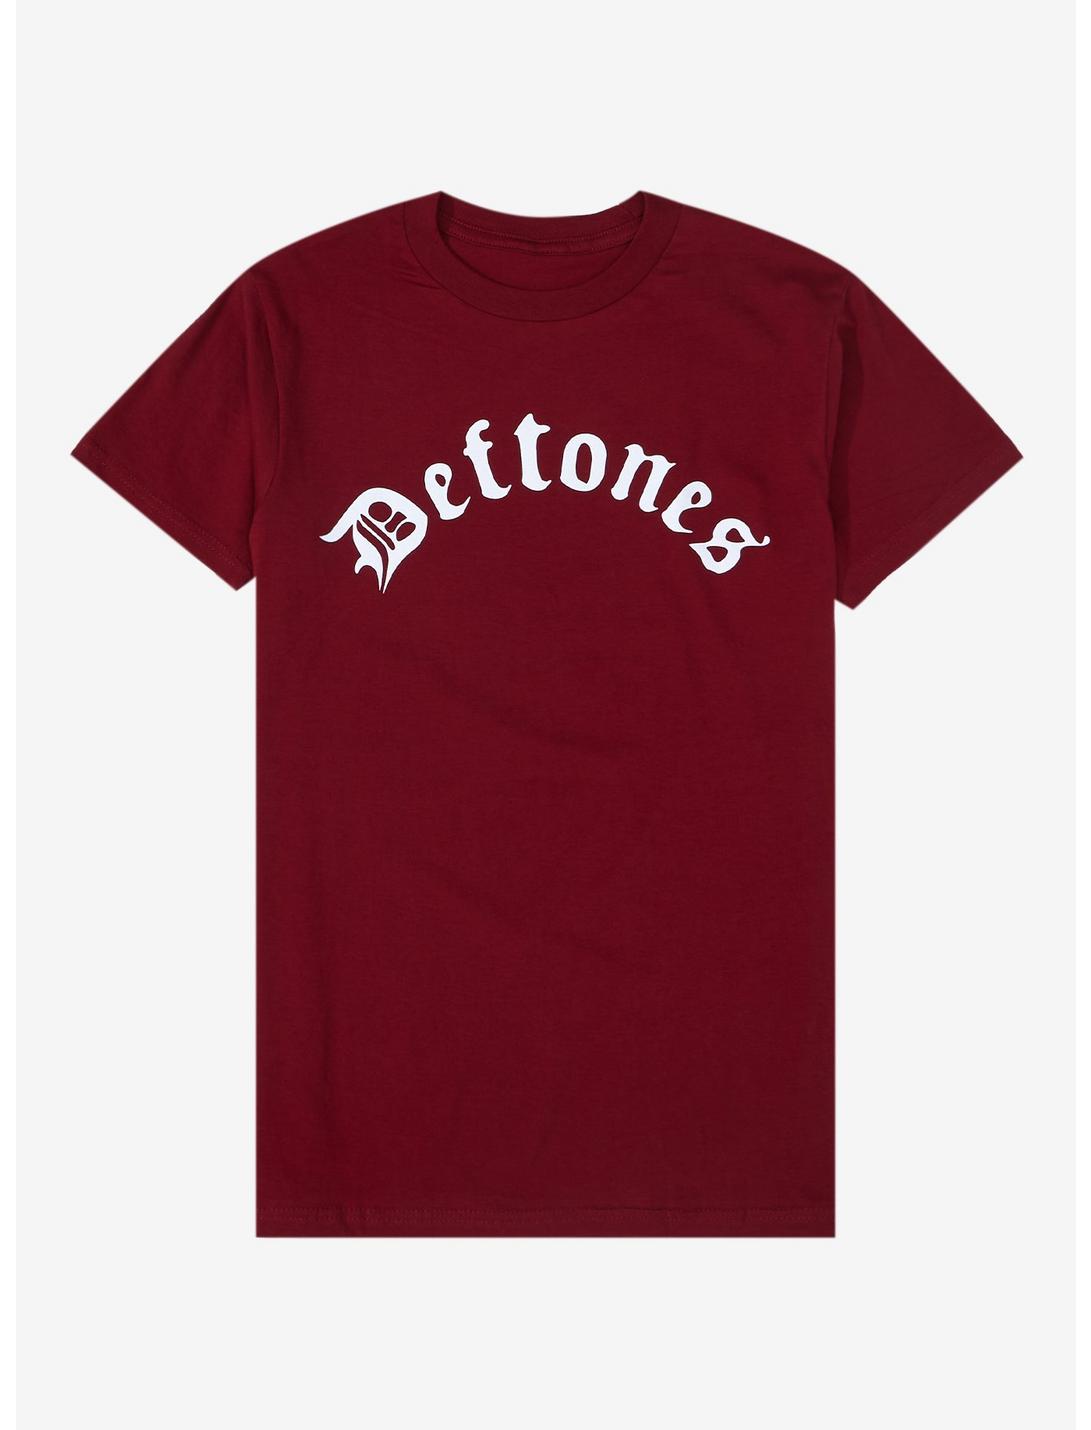 Deftones Text Logo T-Shirt, MAROON, hi-res